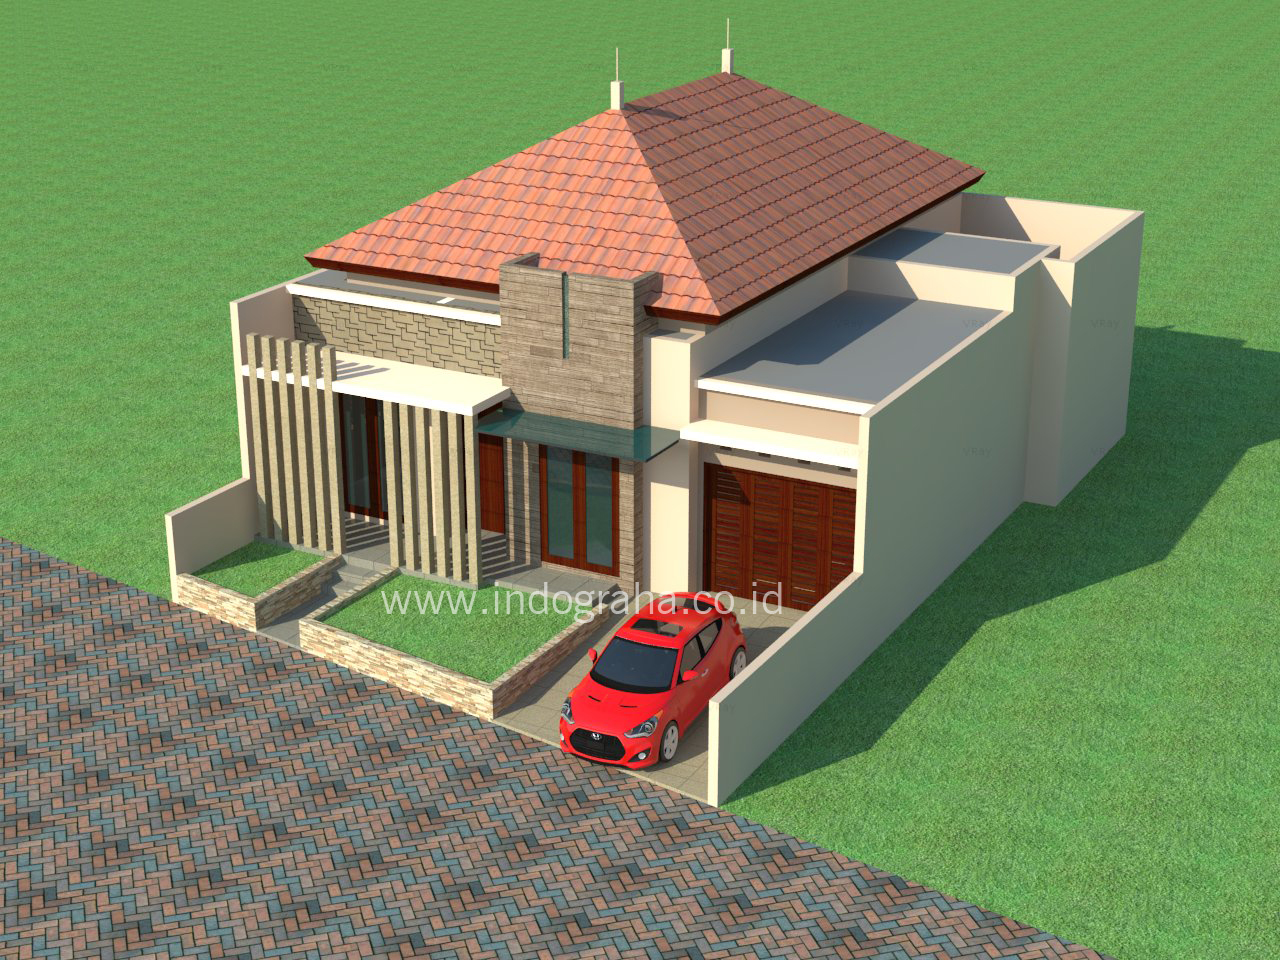 Desain Rumah Jl. Praji Cibubur – Indograha Arsitama